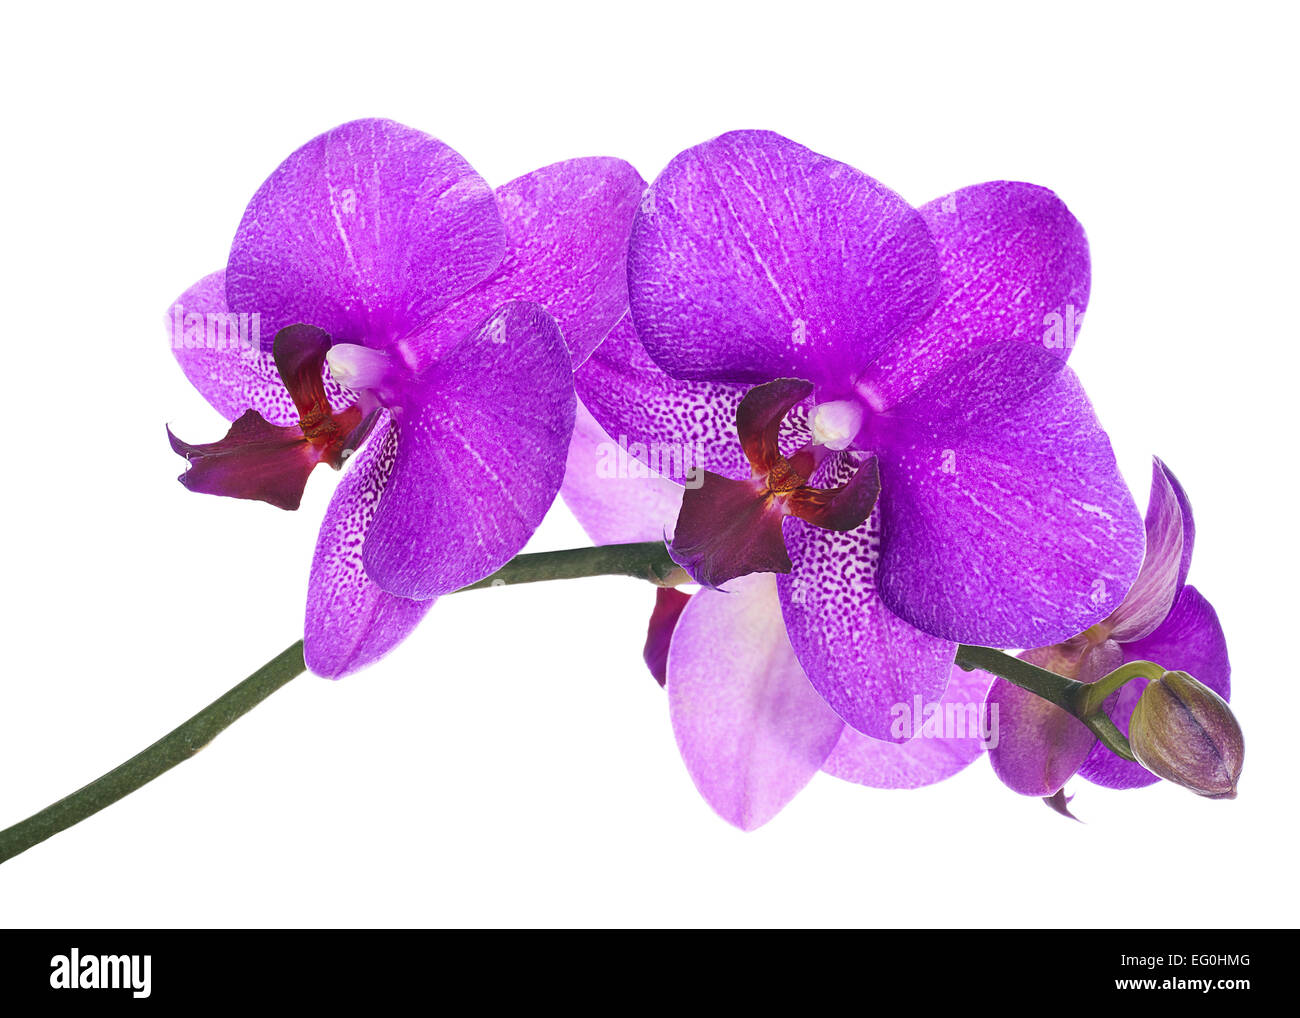 Rameau en fleurs de lilas orchid isolé sur fond blanc. Libre. Banque D'Images